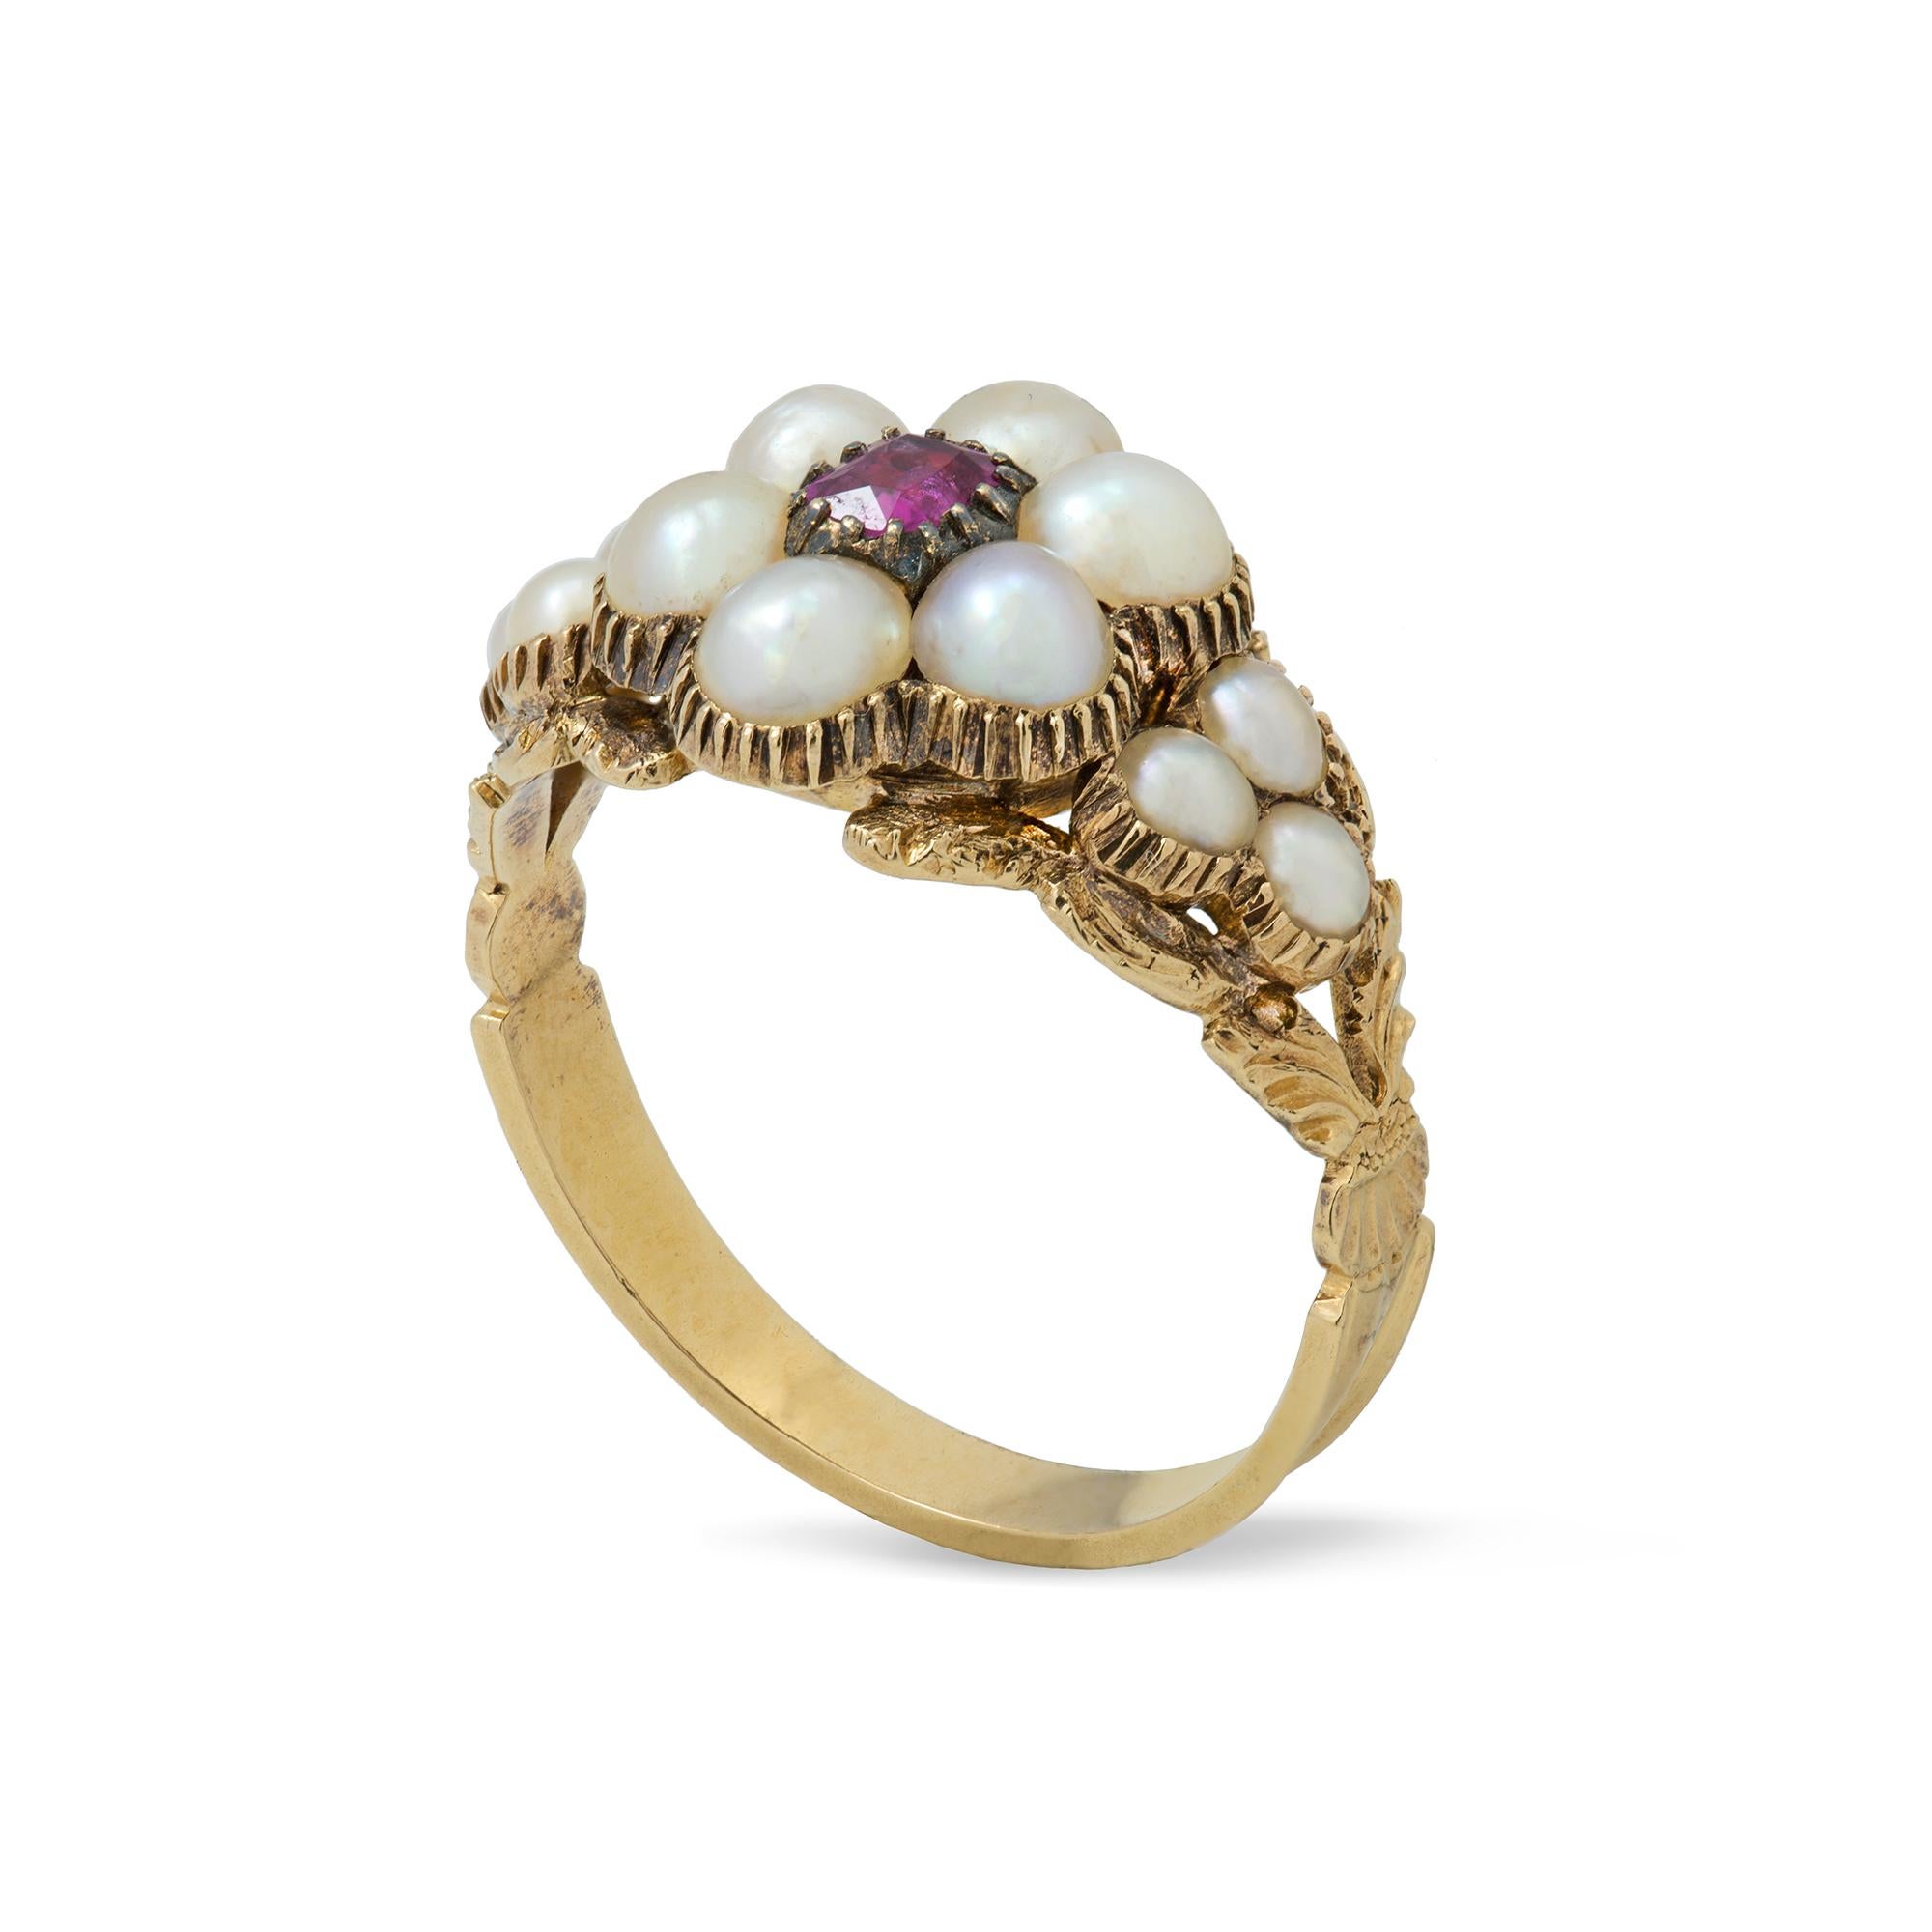 Eine frühe viktorianische Perle und Rubin-Cluster-Ring, der Ring besetzt mit einem  rubin im Kissenschliff, umgeben von sechs Halbperlen mit einem Durchmesser von ca. 3,7 mm, flankiert von Perlenkränzen, alles auf einer goldfarbenen, geriffelten